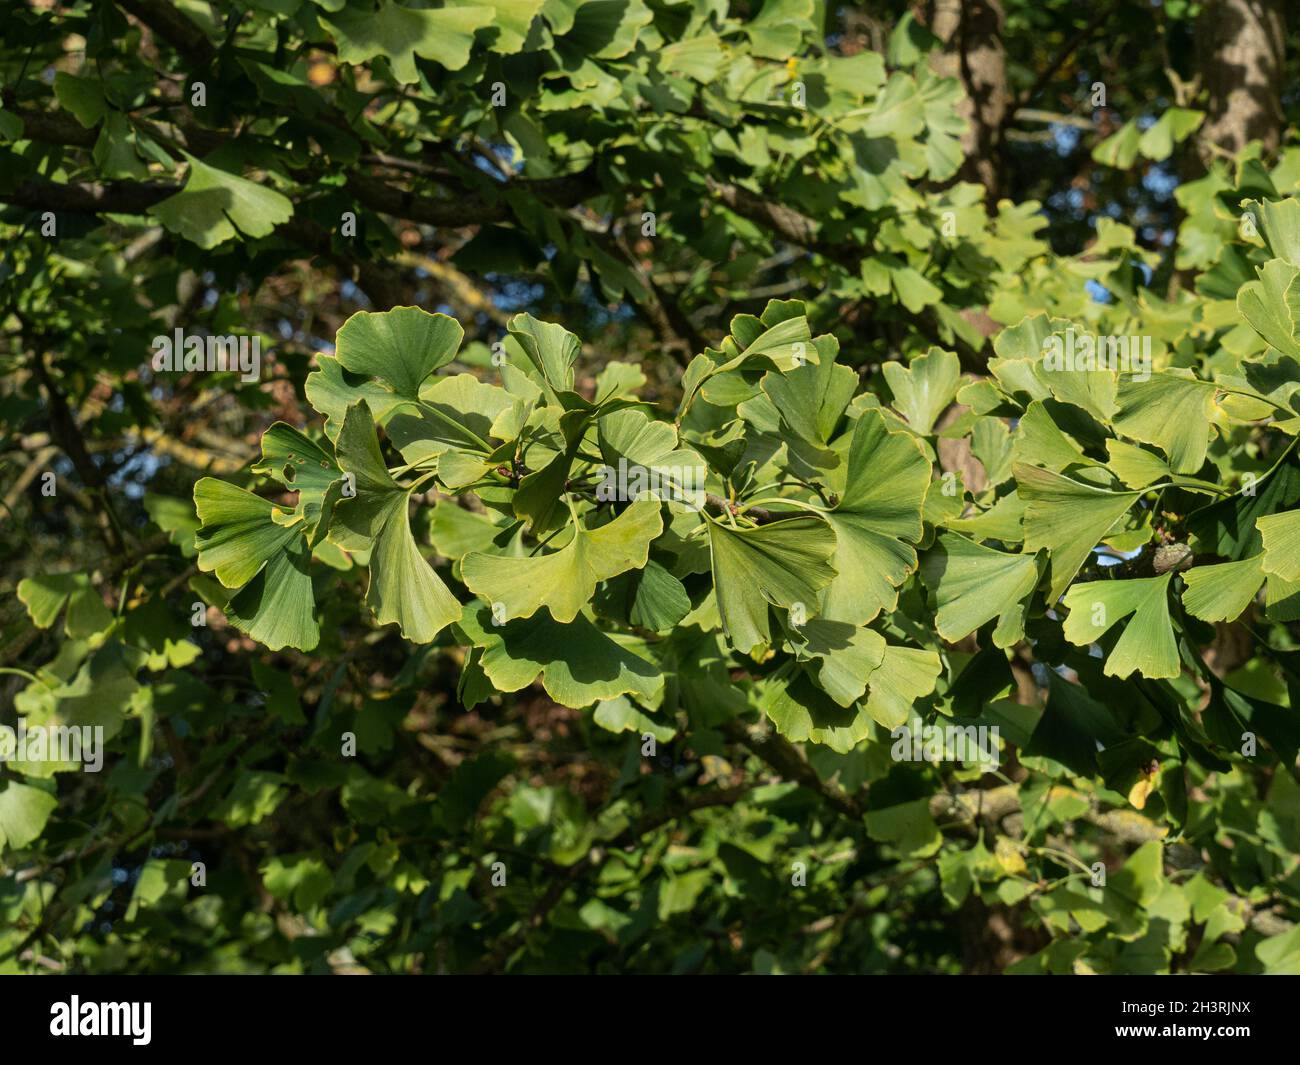 Les feuilles en forme de ventilateur insolite de l'arbre de maidenhair Ginkgo biloba Banque D'Images